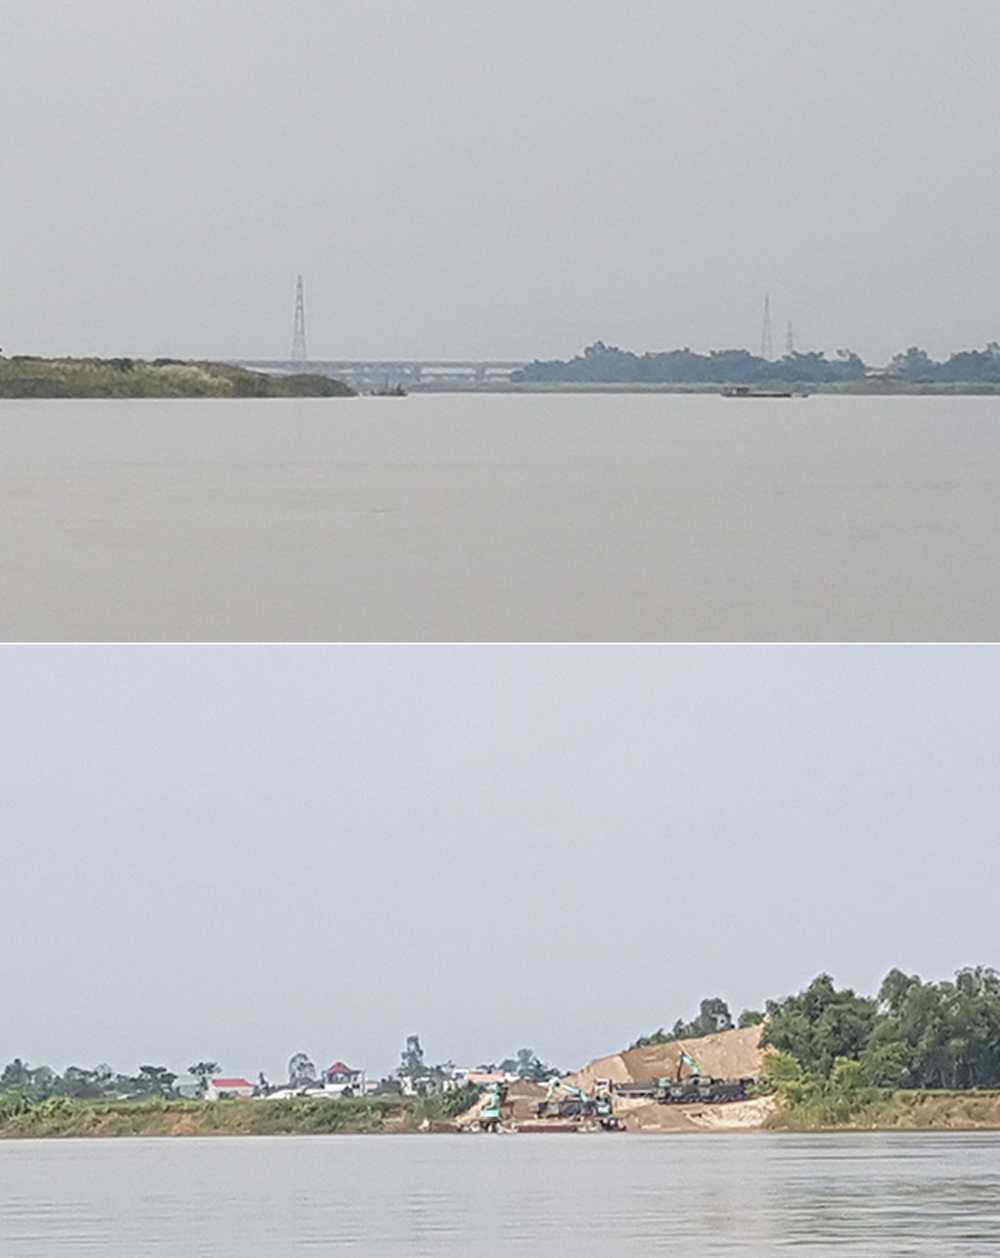 Các tàu khai thác cát (hình trên) và tập kết cát (hình dưới) trên sông Thu Bồn